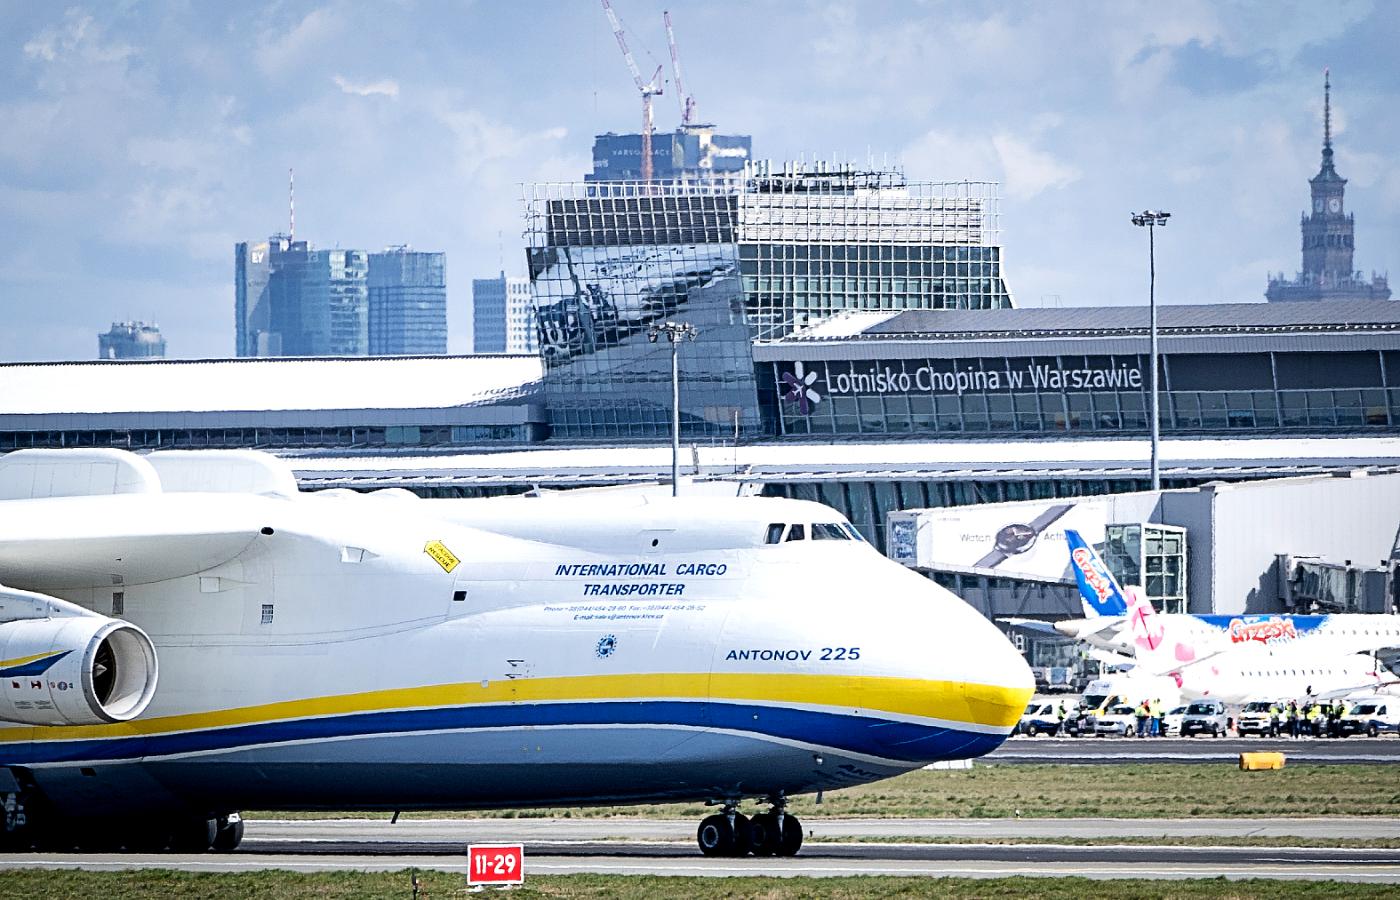 Największy samolot transportowy świata Antonov An-225 Mrija na Lotnisku Chopina